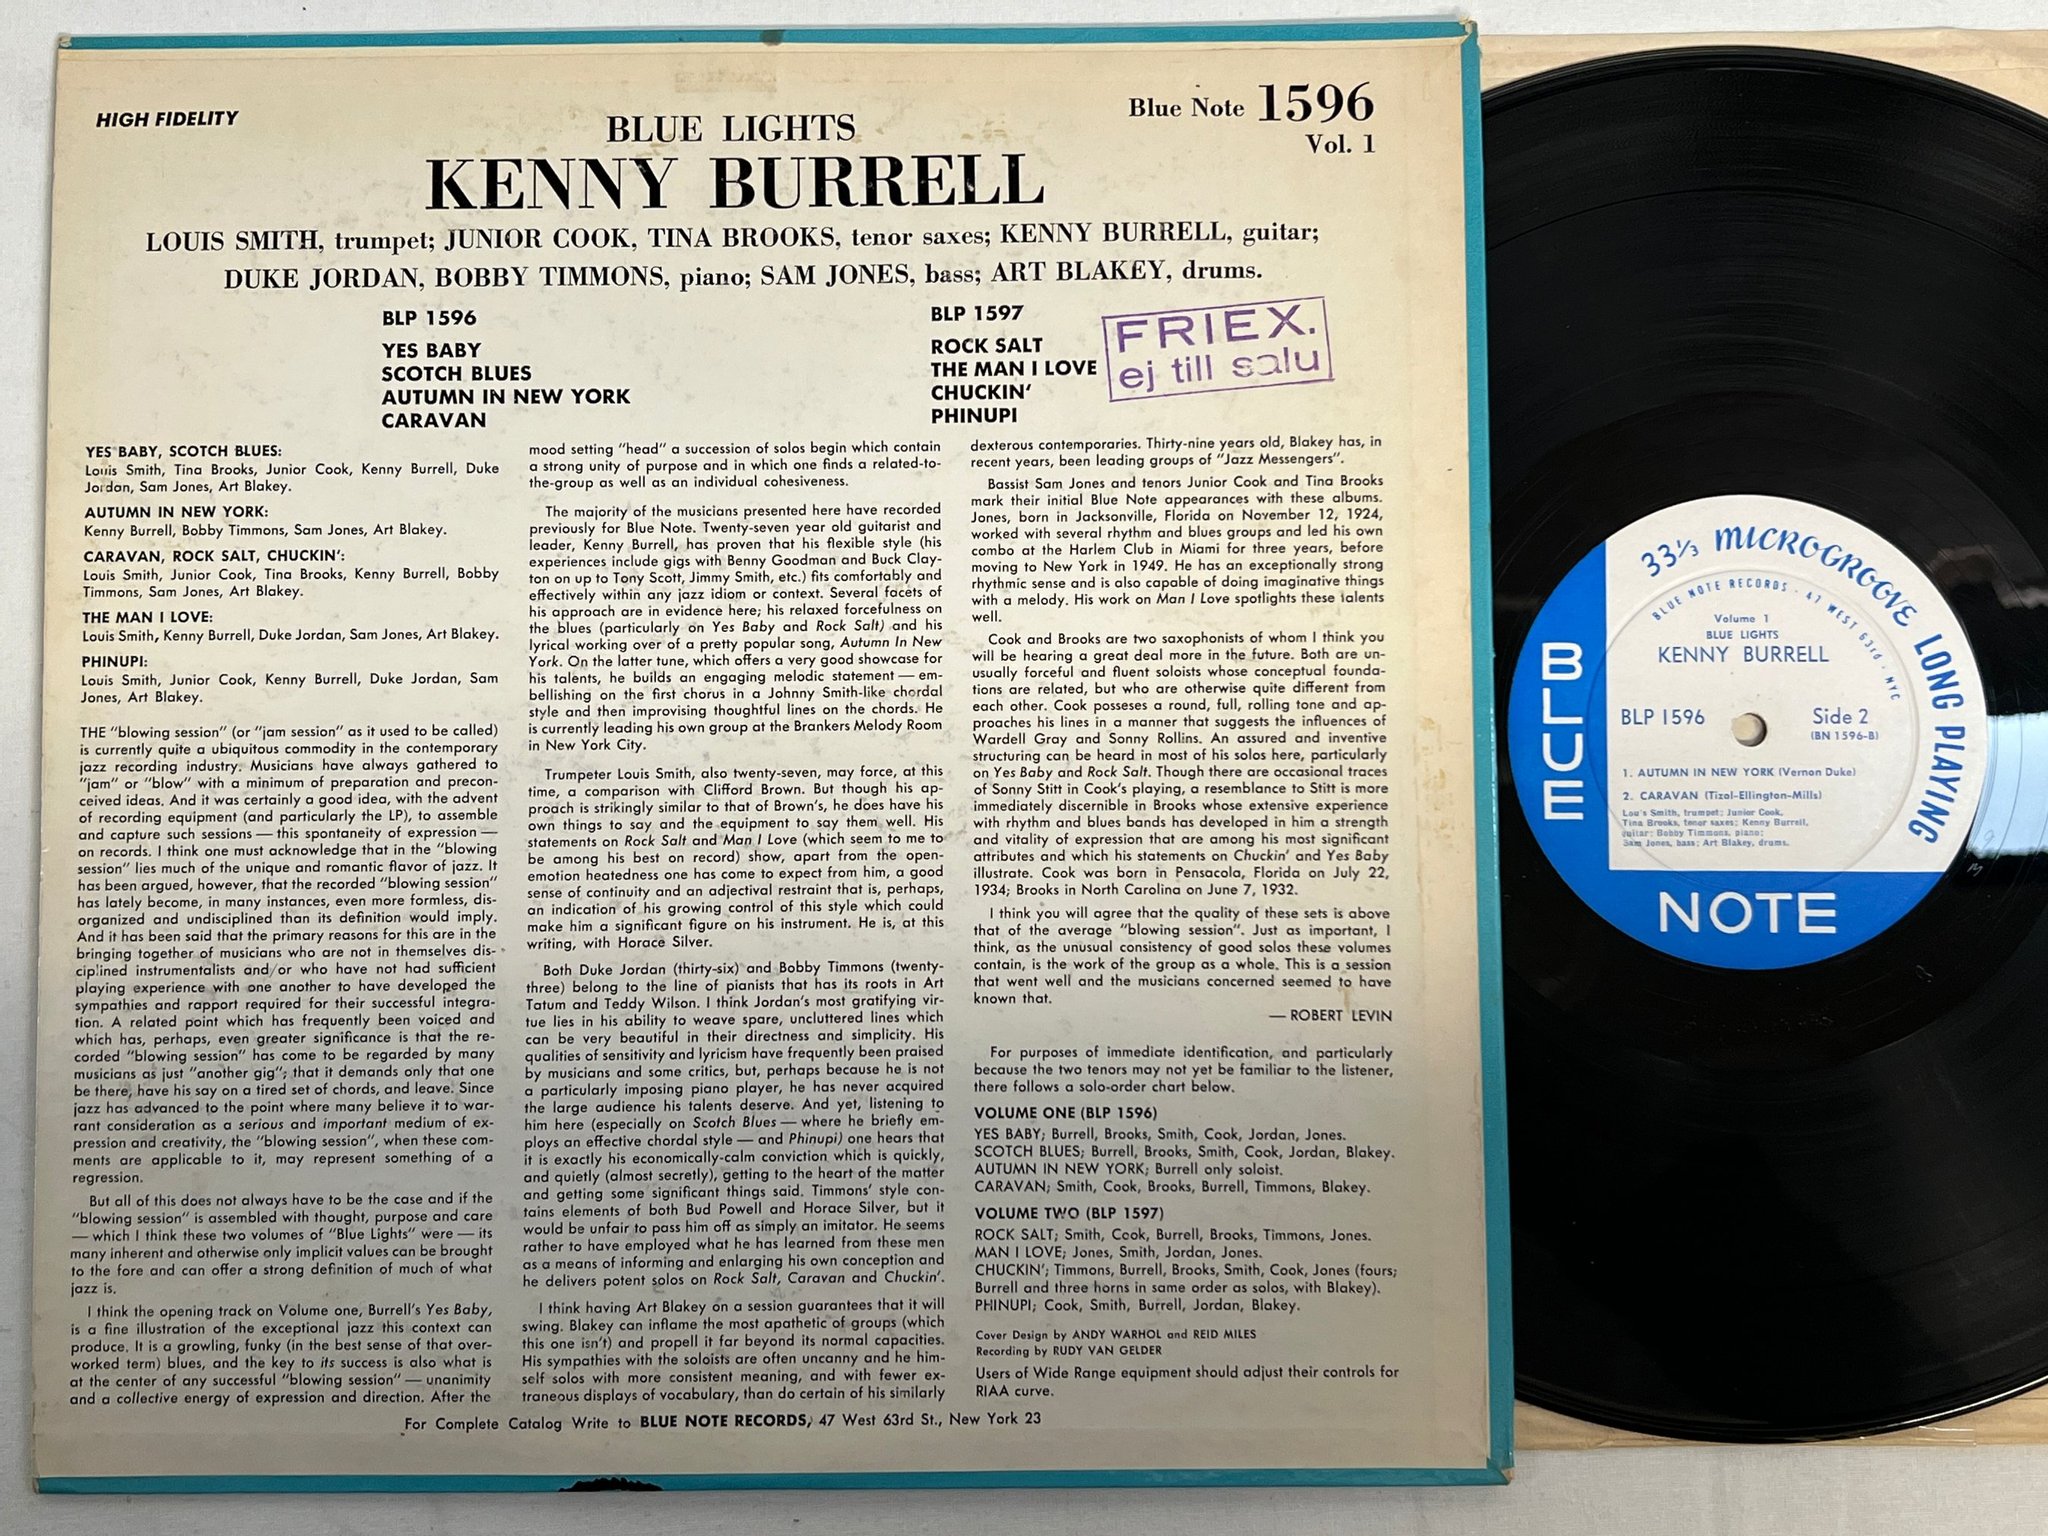 Omslagsbild för skivan KENNY BURRELL blue lights LP -58 US BLUE NOTE BLP 1596 Andy Warhol ** MEGA RARE 